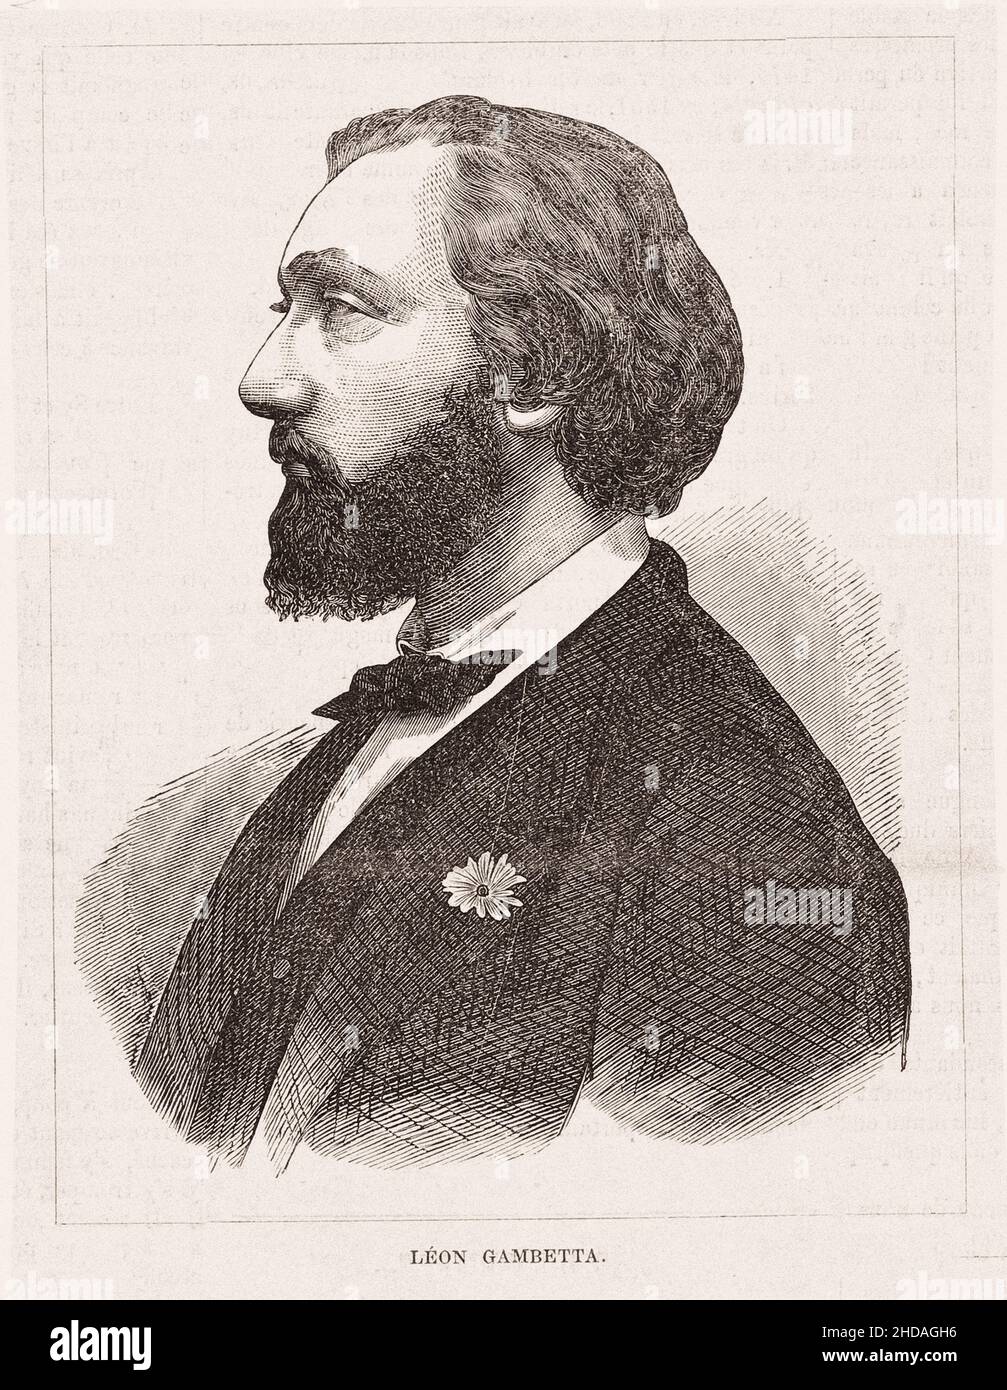 Retrato del joven Léon Gambetta. Leon Michel Gambetta (1838 - 1882) - político republicano francés, primer ministro y ministro de Asuntos Exteriores de Foto de stock